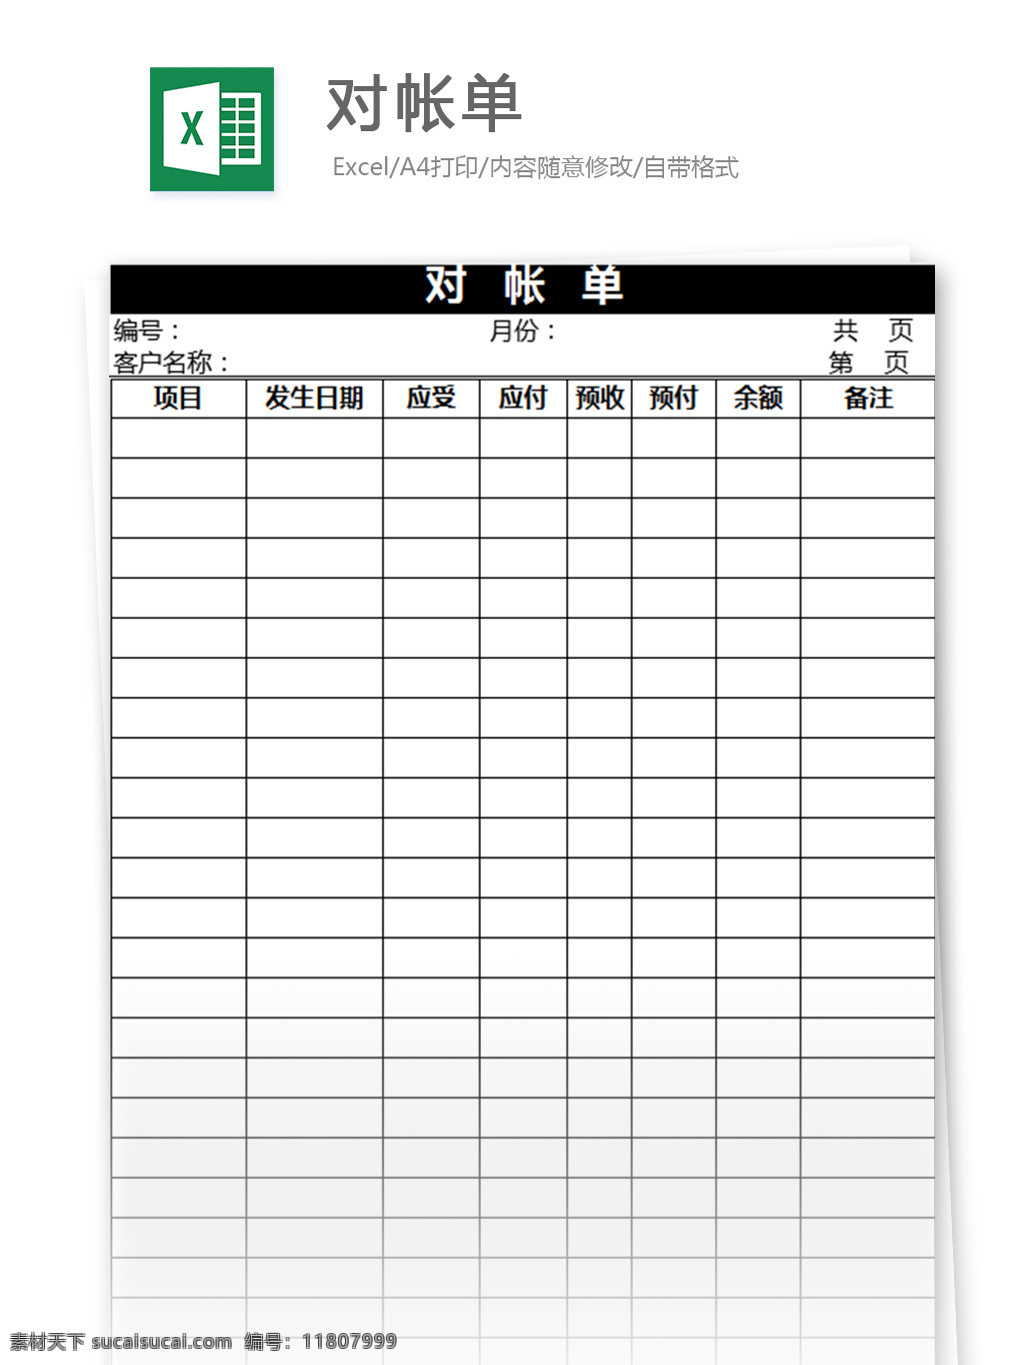 帐单 excel 模板 表格模板 图表 表格设计 表格 对账单 对账单模板 对账单表格